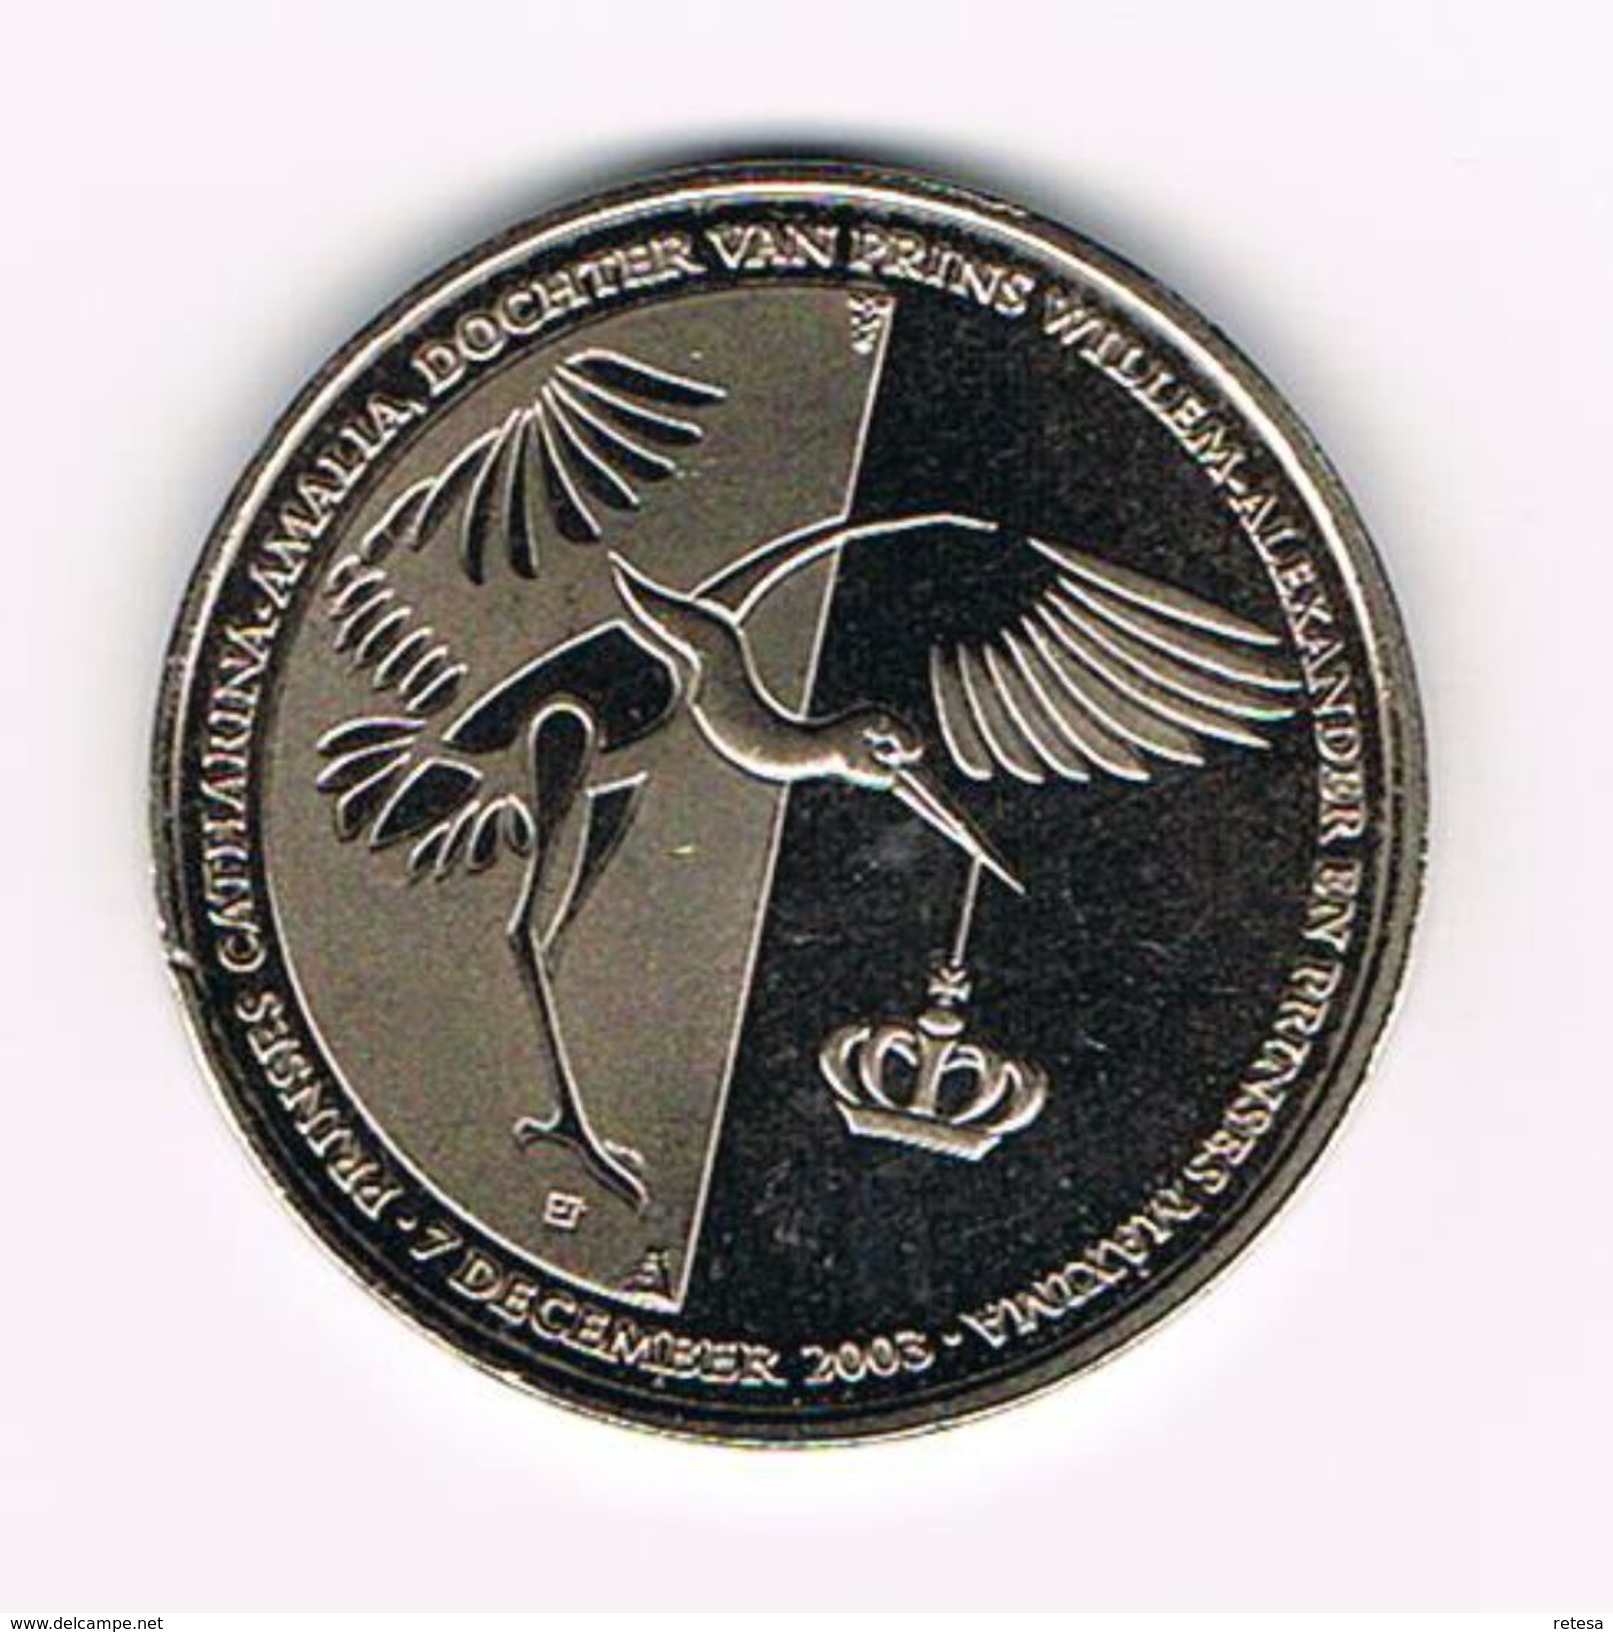 ¨¨ NEDERLAND  HERDENKINGSMUNT  GEBOORTE  PRINSES AMALIA 7 DECEMBER  2003 - Pièces écrasées (Elongated Coins)